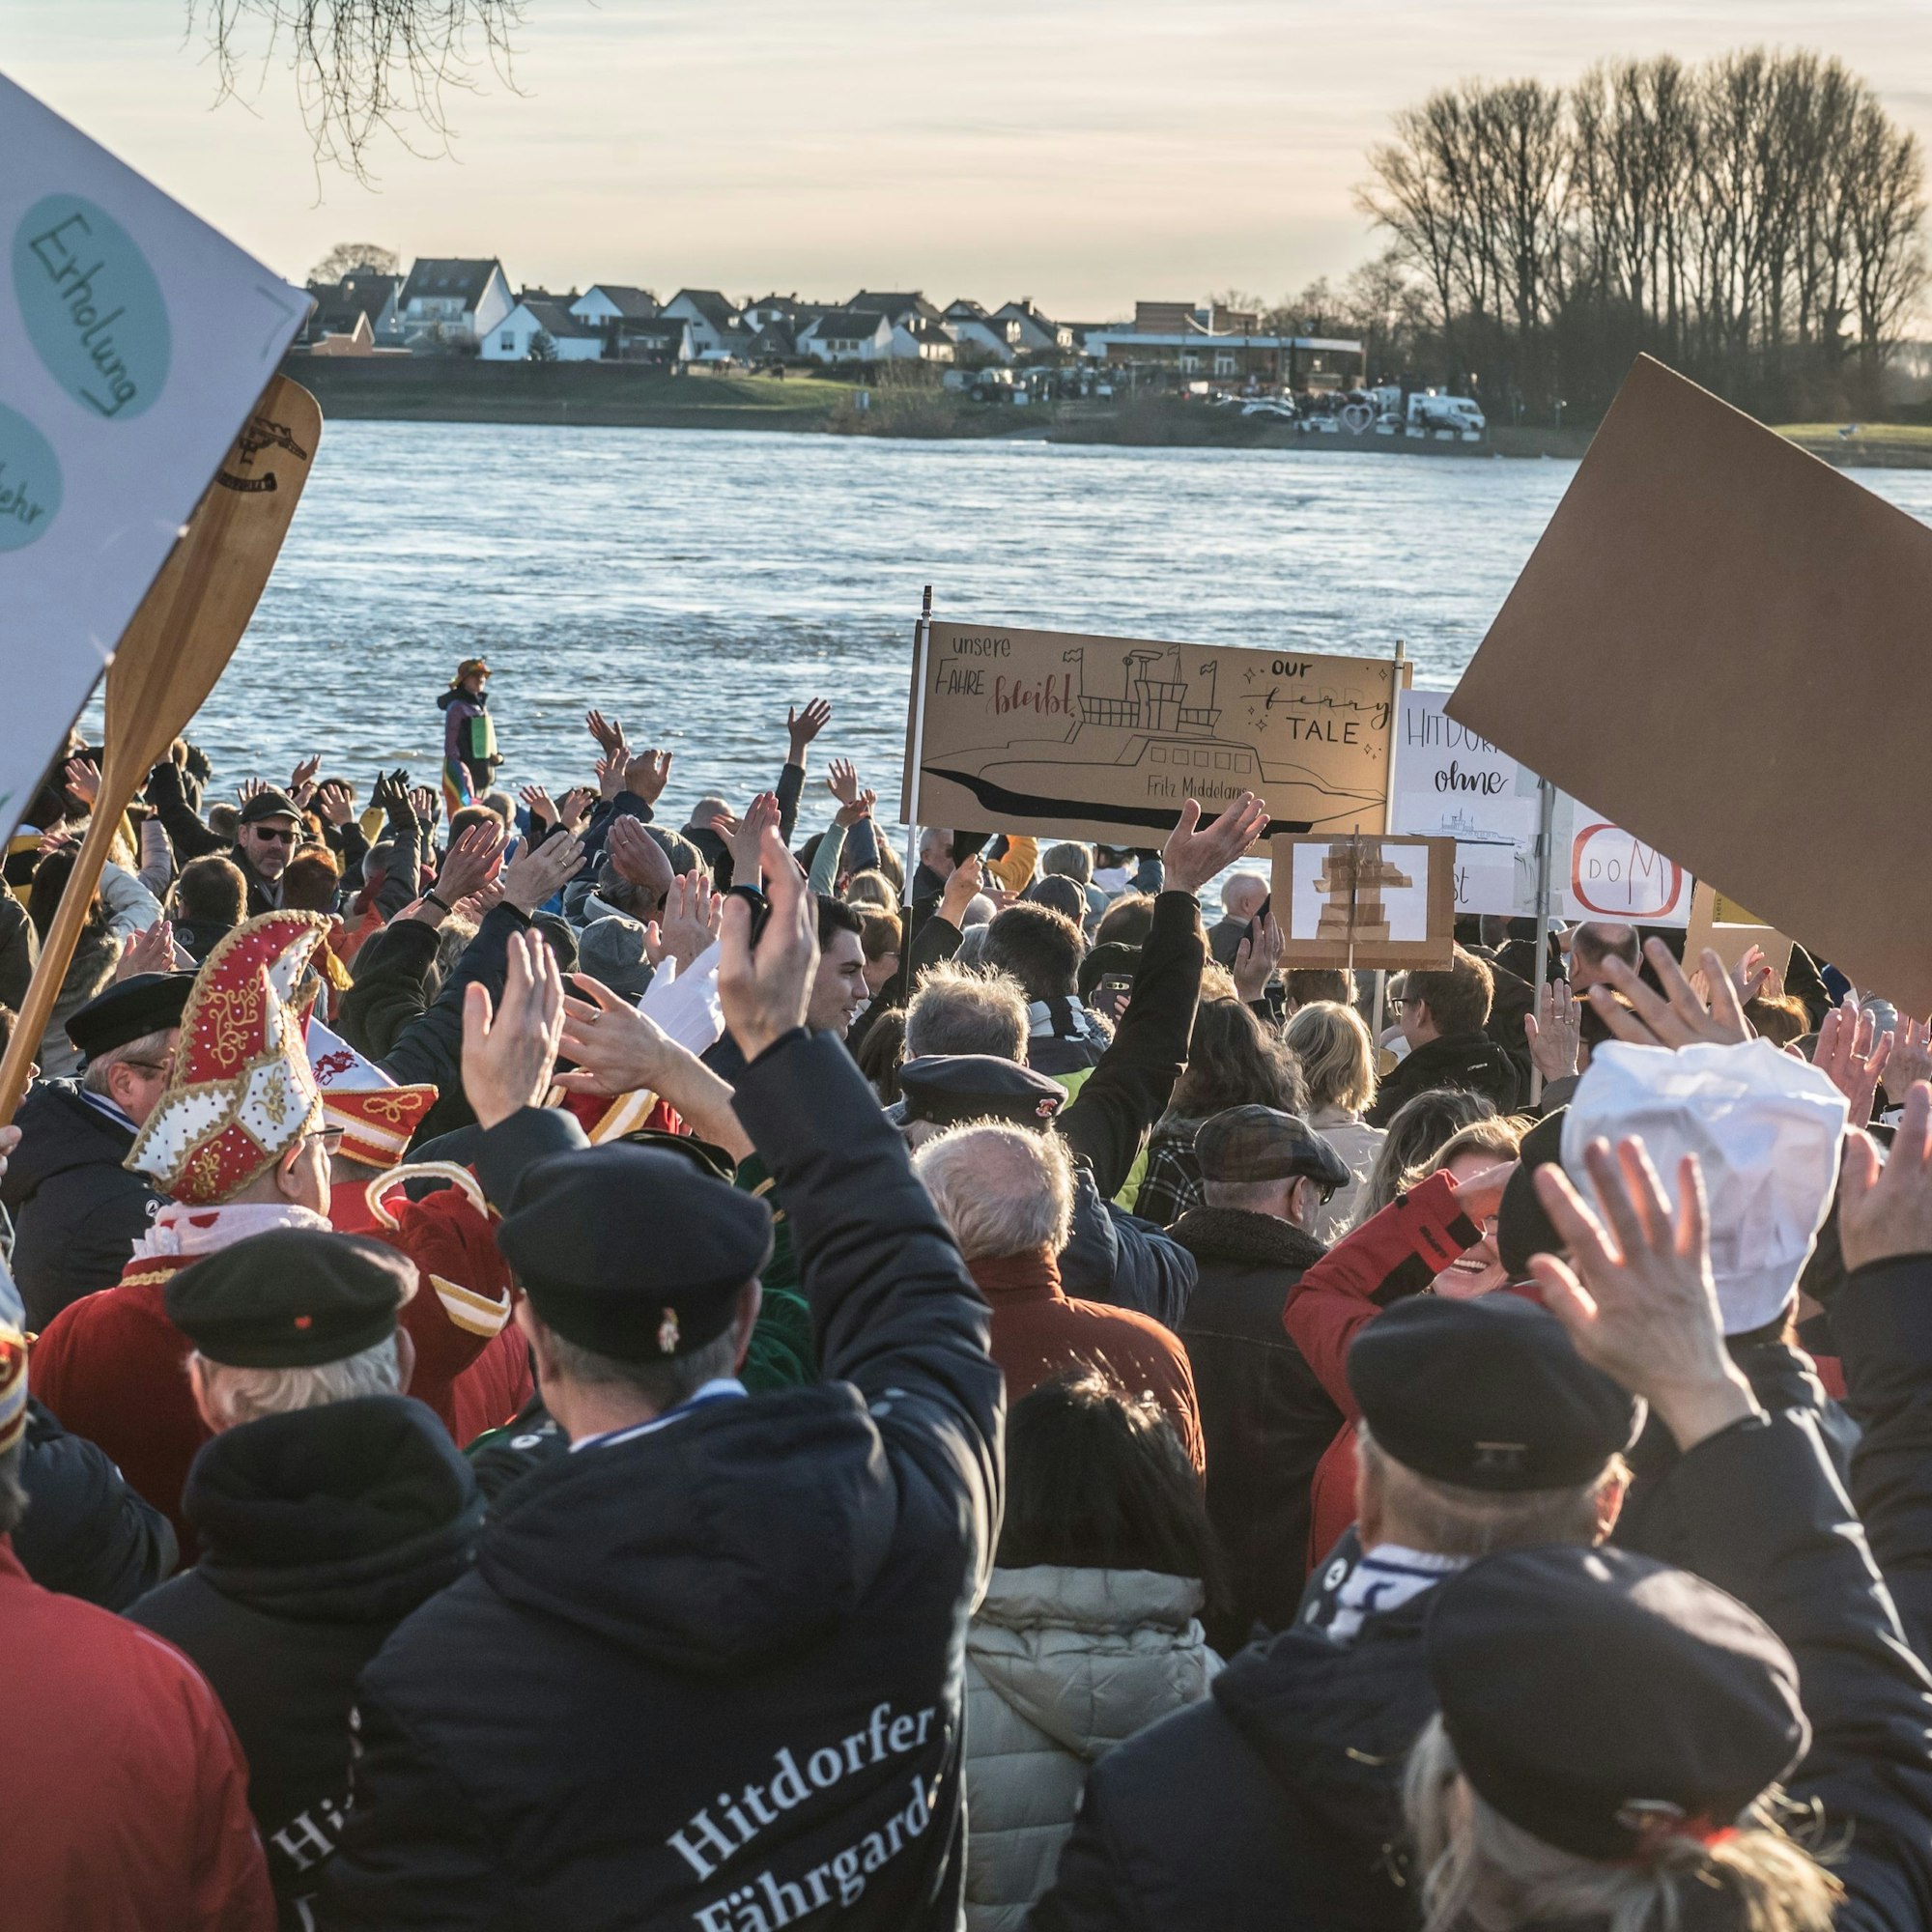 Zur fast spontanen Protestveranstaltung am Sonntagnachmittag waren hunderte auh Itdorf gekommen. Gegenüber in Langel standen auch viele Leute. Foto: Ralf Krieger